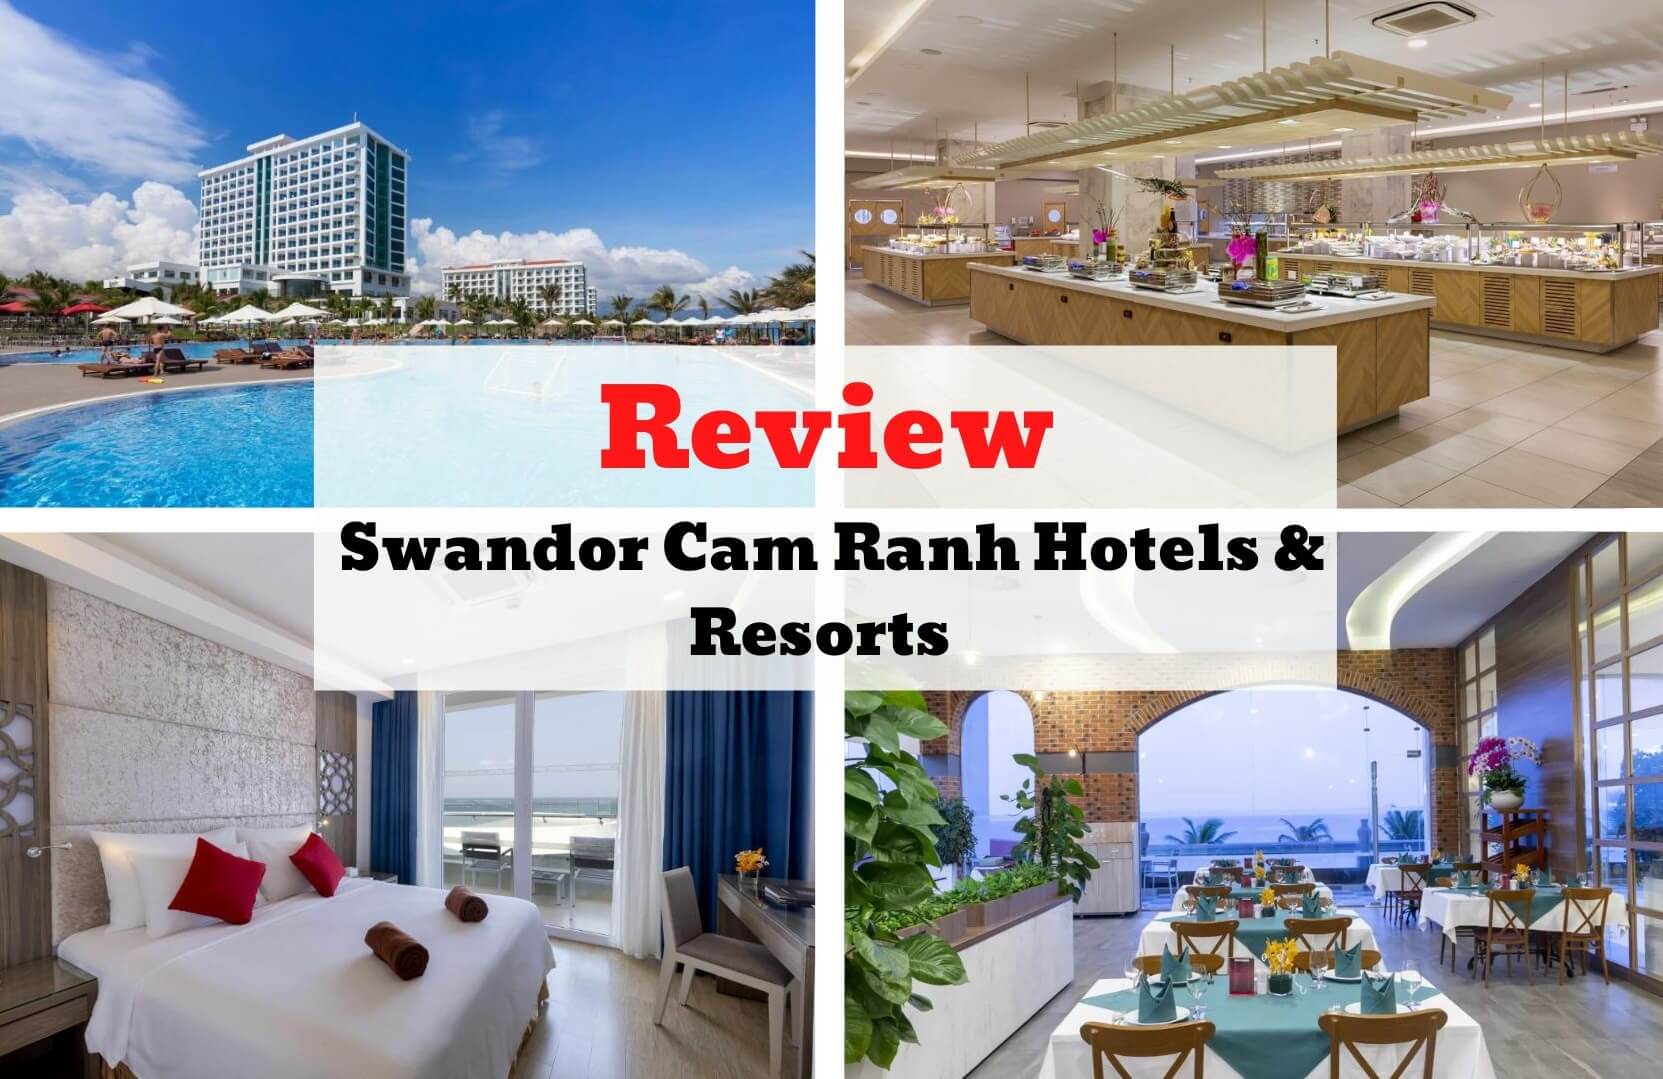 Review Swandor Cam Ranh Resort - Thiết kế mang hơi thở hiện đại sang trọng